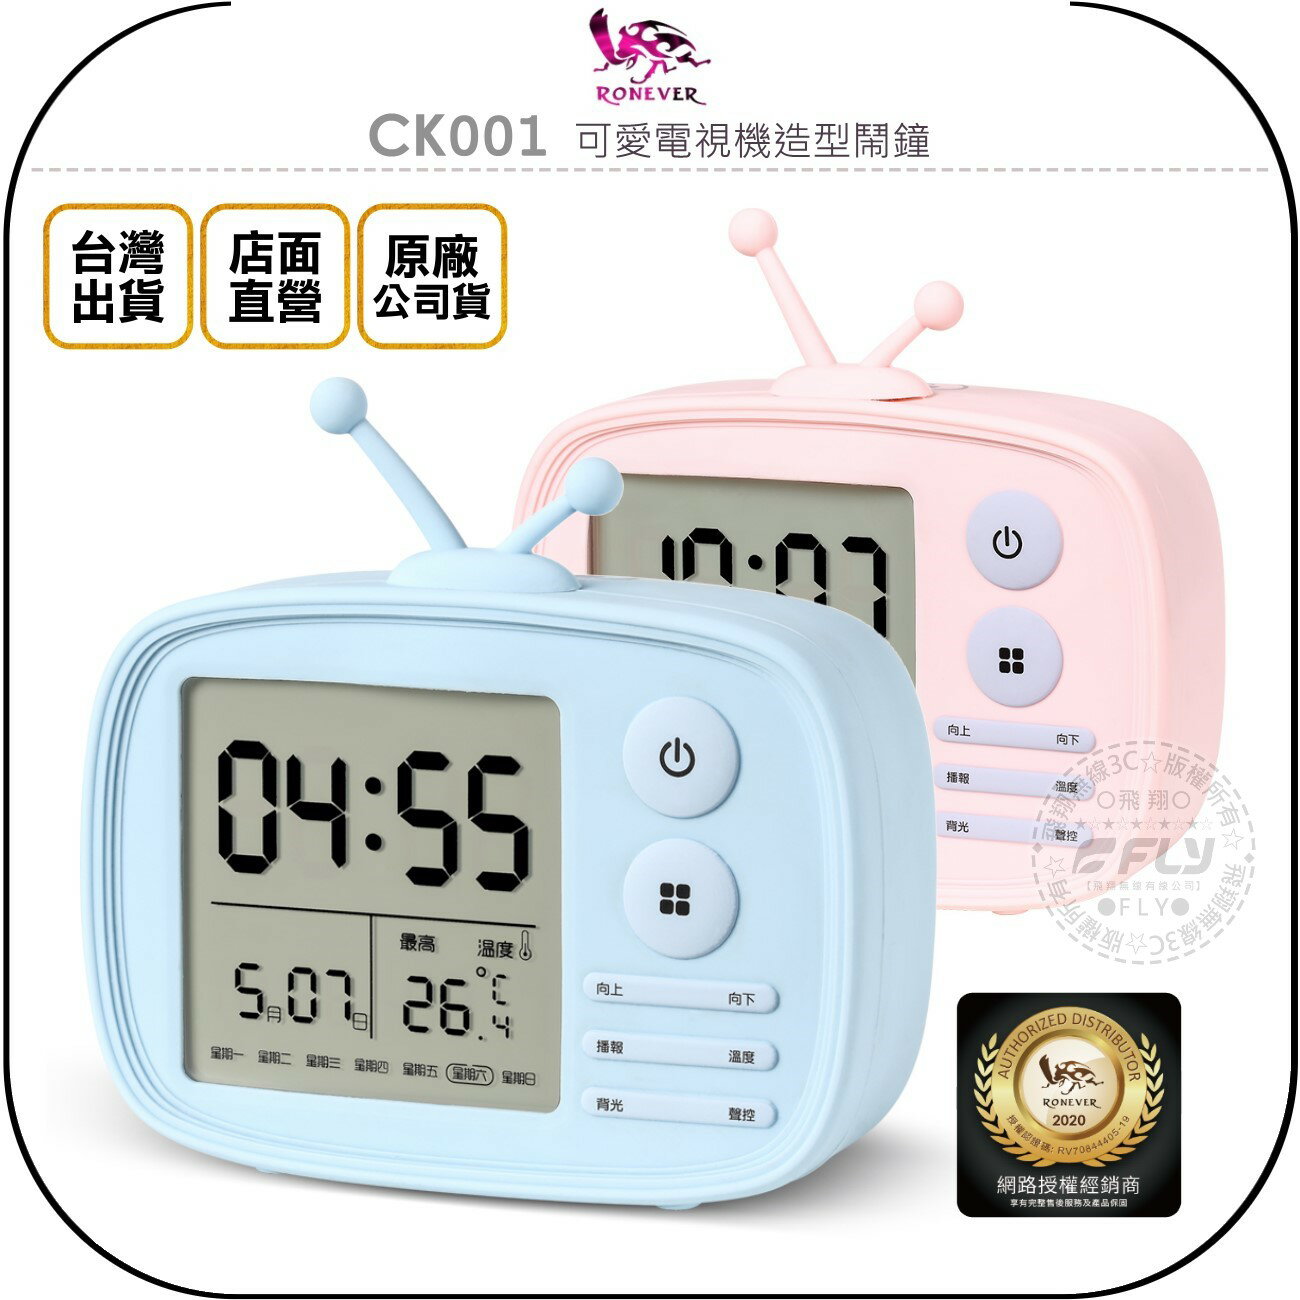 《飛翔無線3C》RONEVER 向聯 CK001 可愛電視機造型鬧鐘◉公司貨◉觸控語音◉溫度日期◉鬧鈴選擇